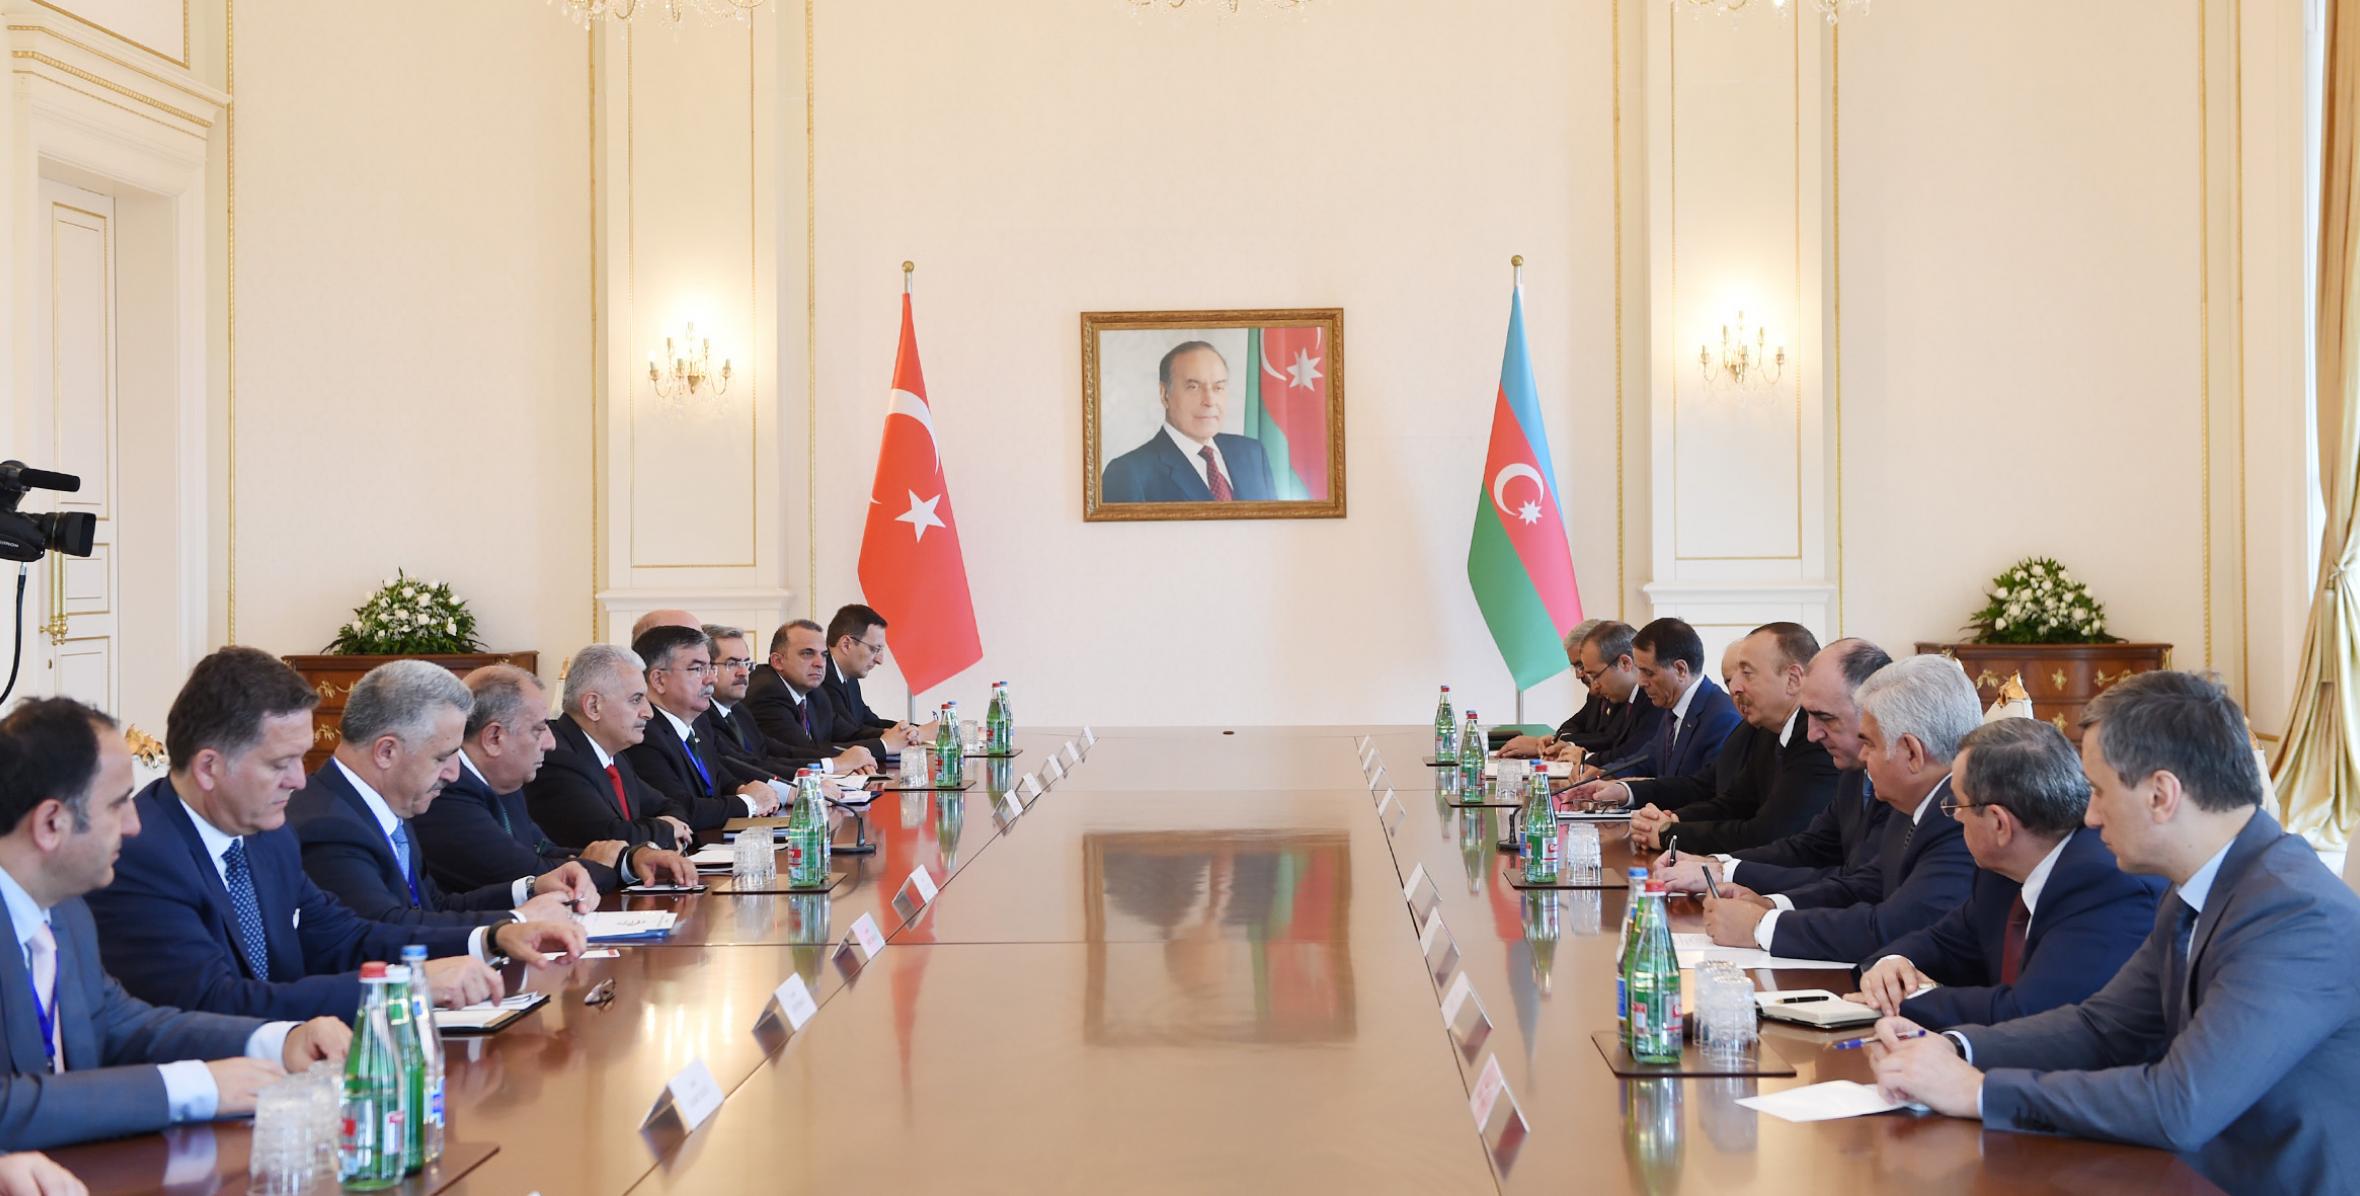 Состоялась встреча Ильхама Алиева и премьер-министра Турецкой Республики Бинали Йылдырыма в расширенном составе